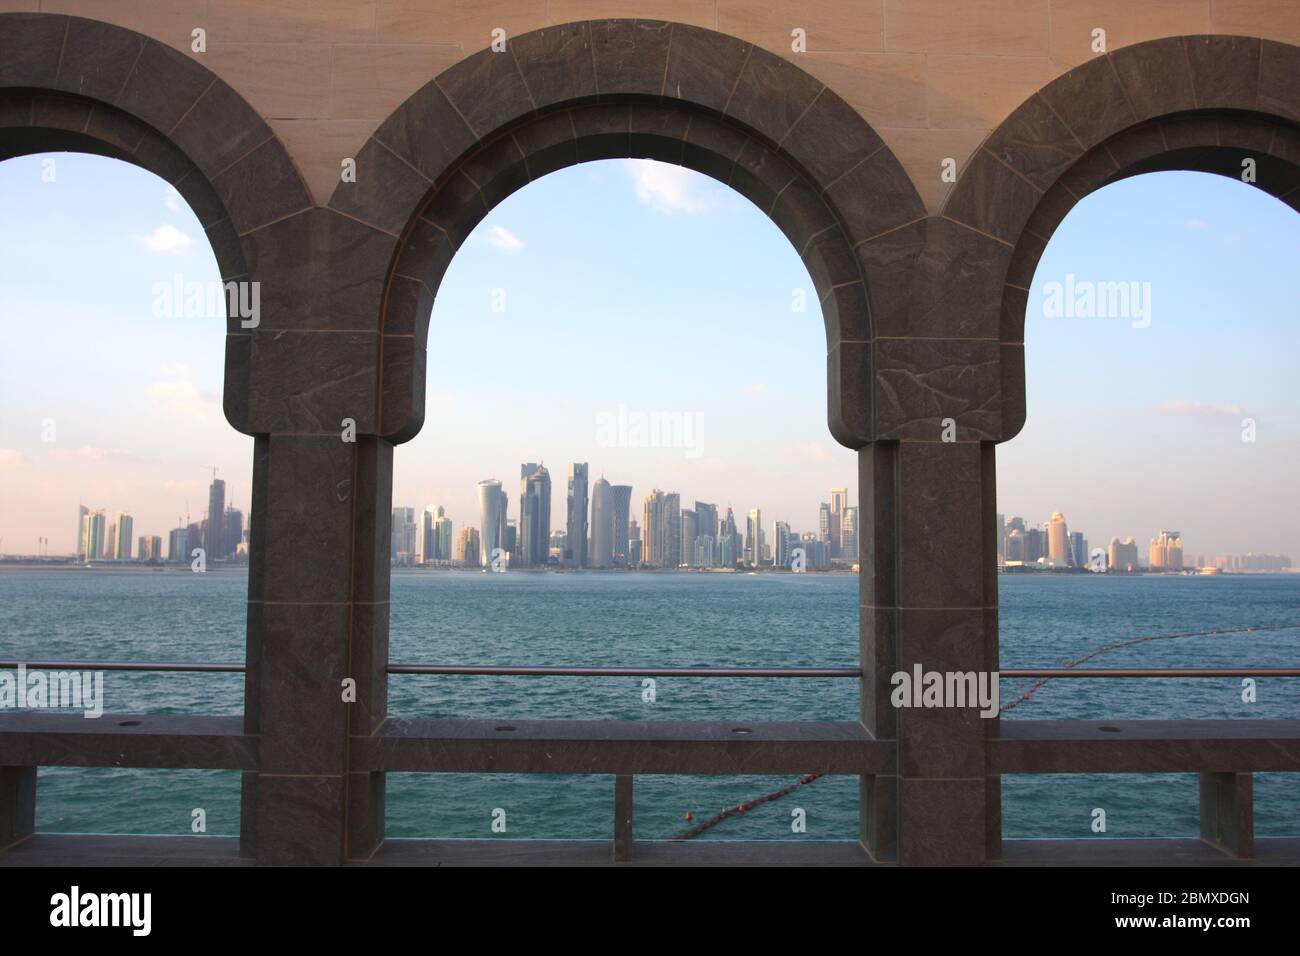 El horizonte de Doha se ve a través de arcos en el Museo de Arte Islámico de Doha, Qatar Foto de stock